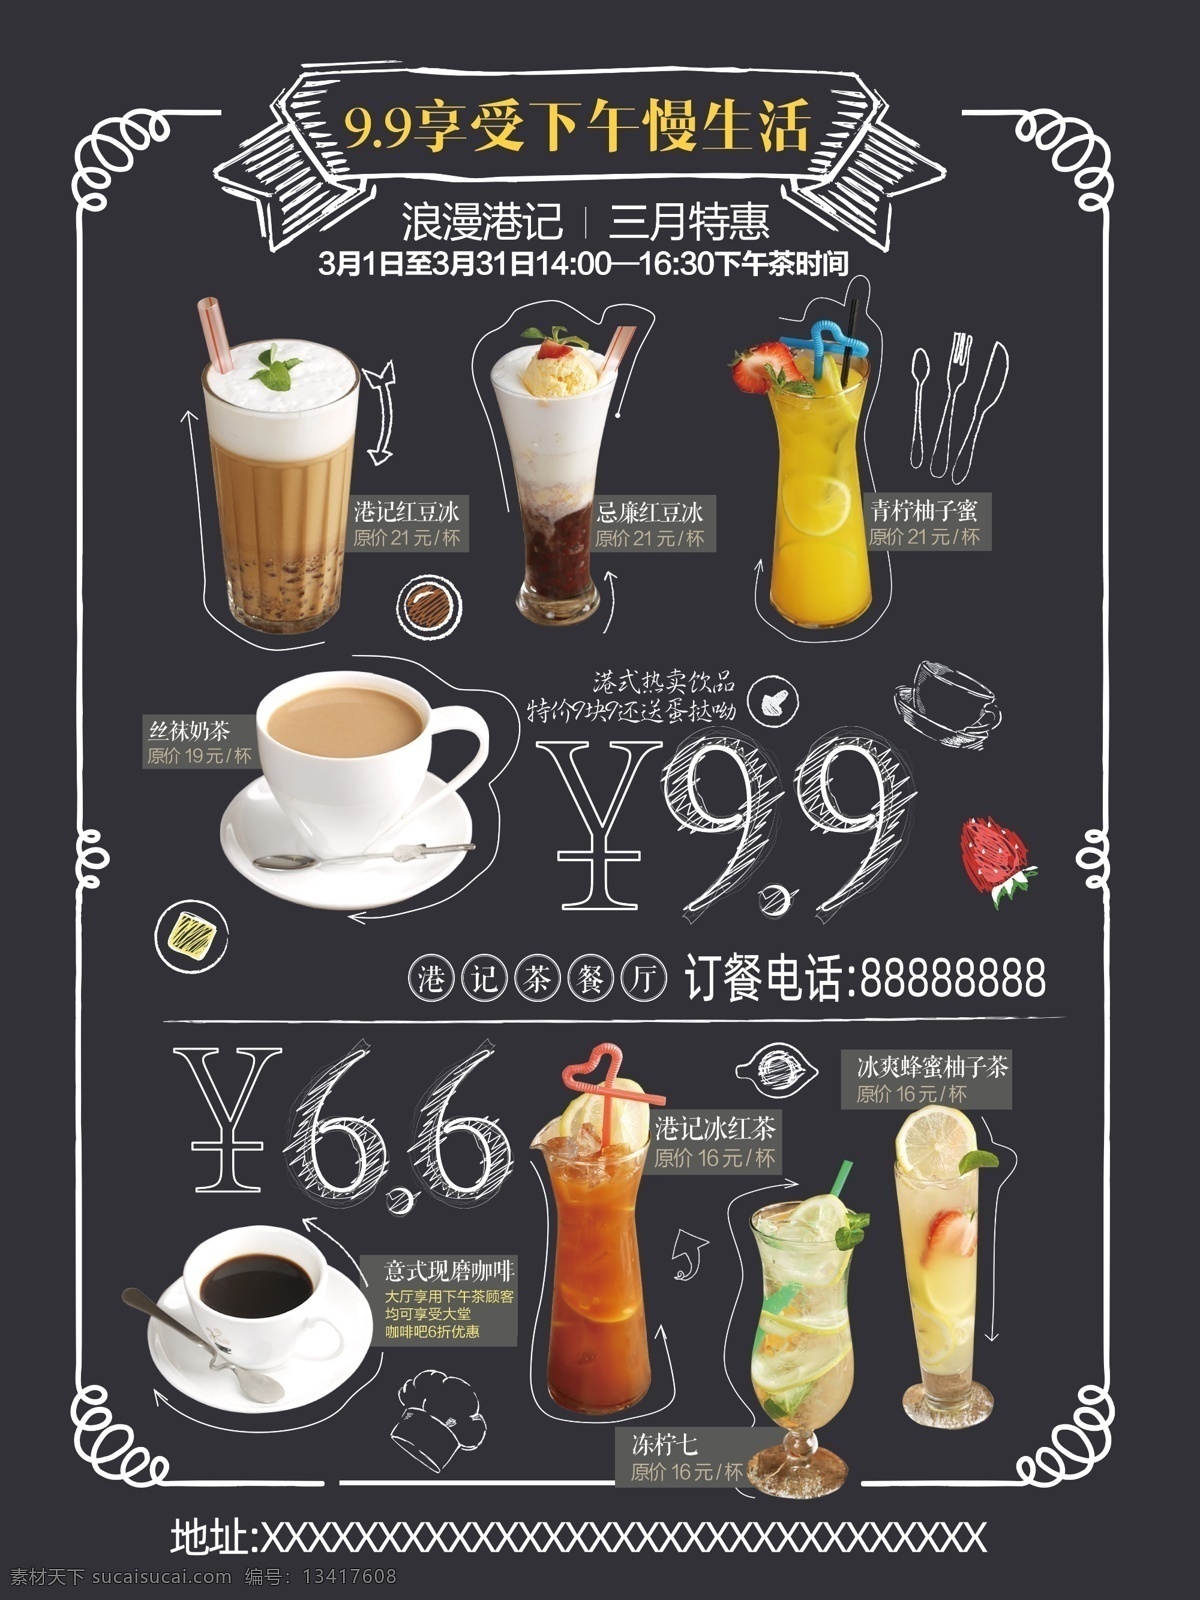 饮品 店 促销 海报 饮品店 价格 粉笔 蜡笔 风格 奶茶 饮料 果汁 咖啡 dm宣传单